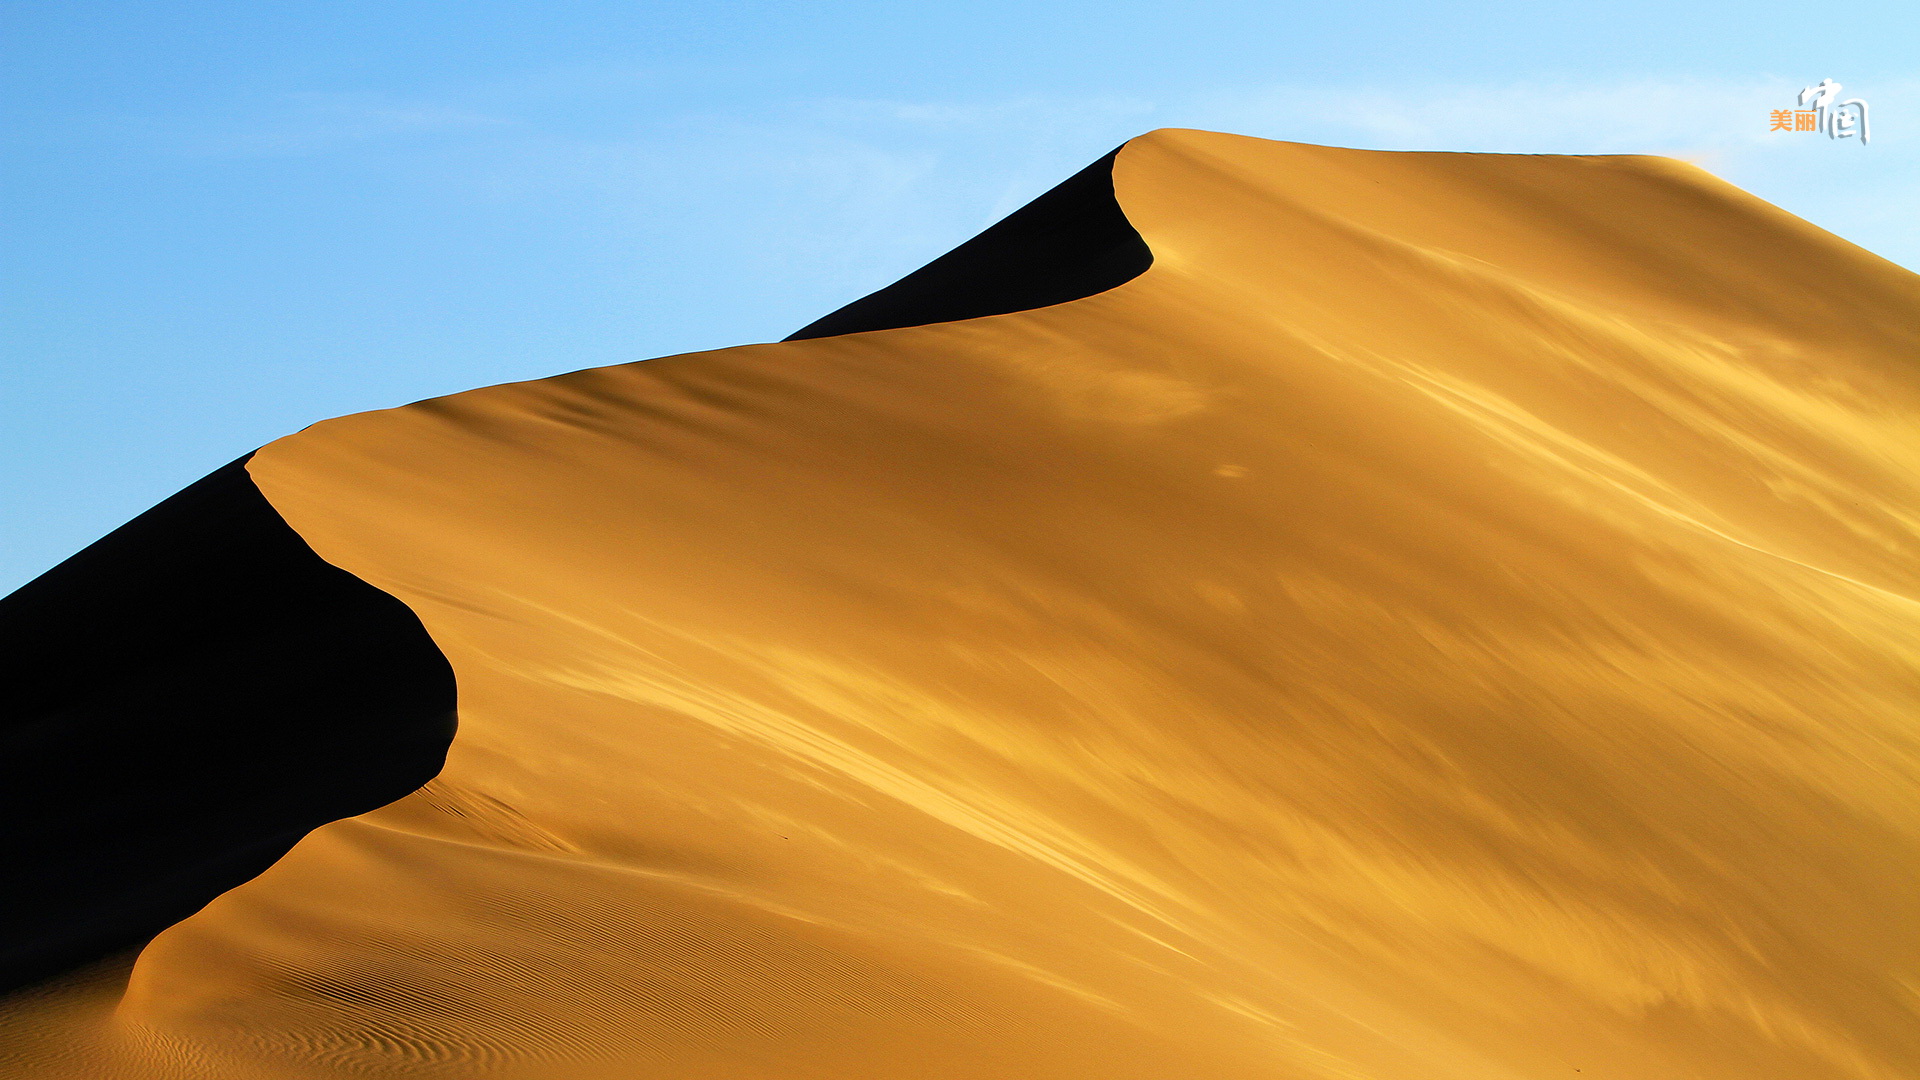 世界第四大沙漠内蒙古巴丹吉林沙漠灵幻之美 - 图库 - 时事经济观察网